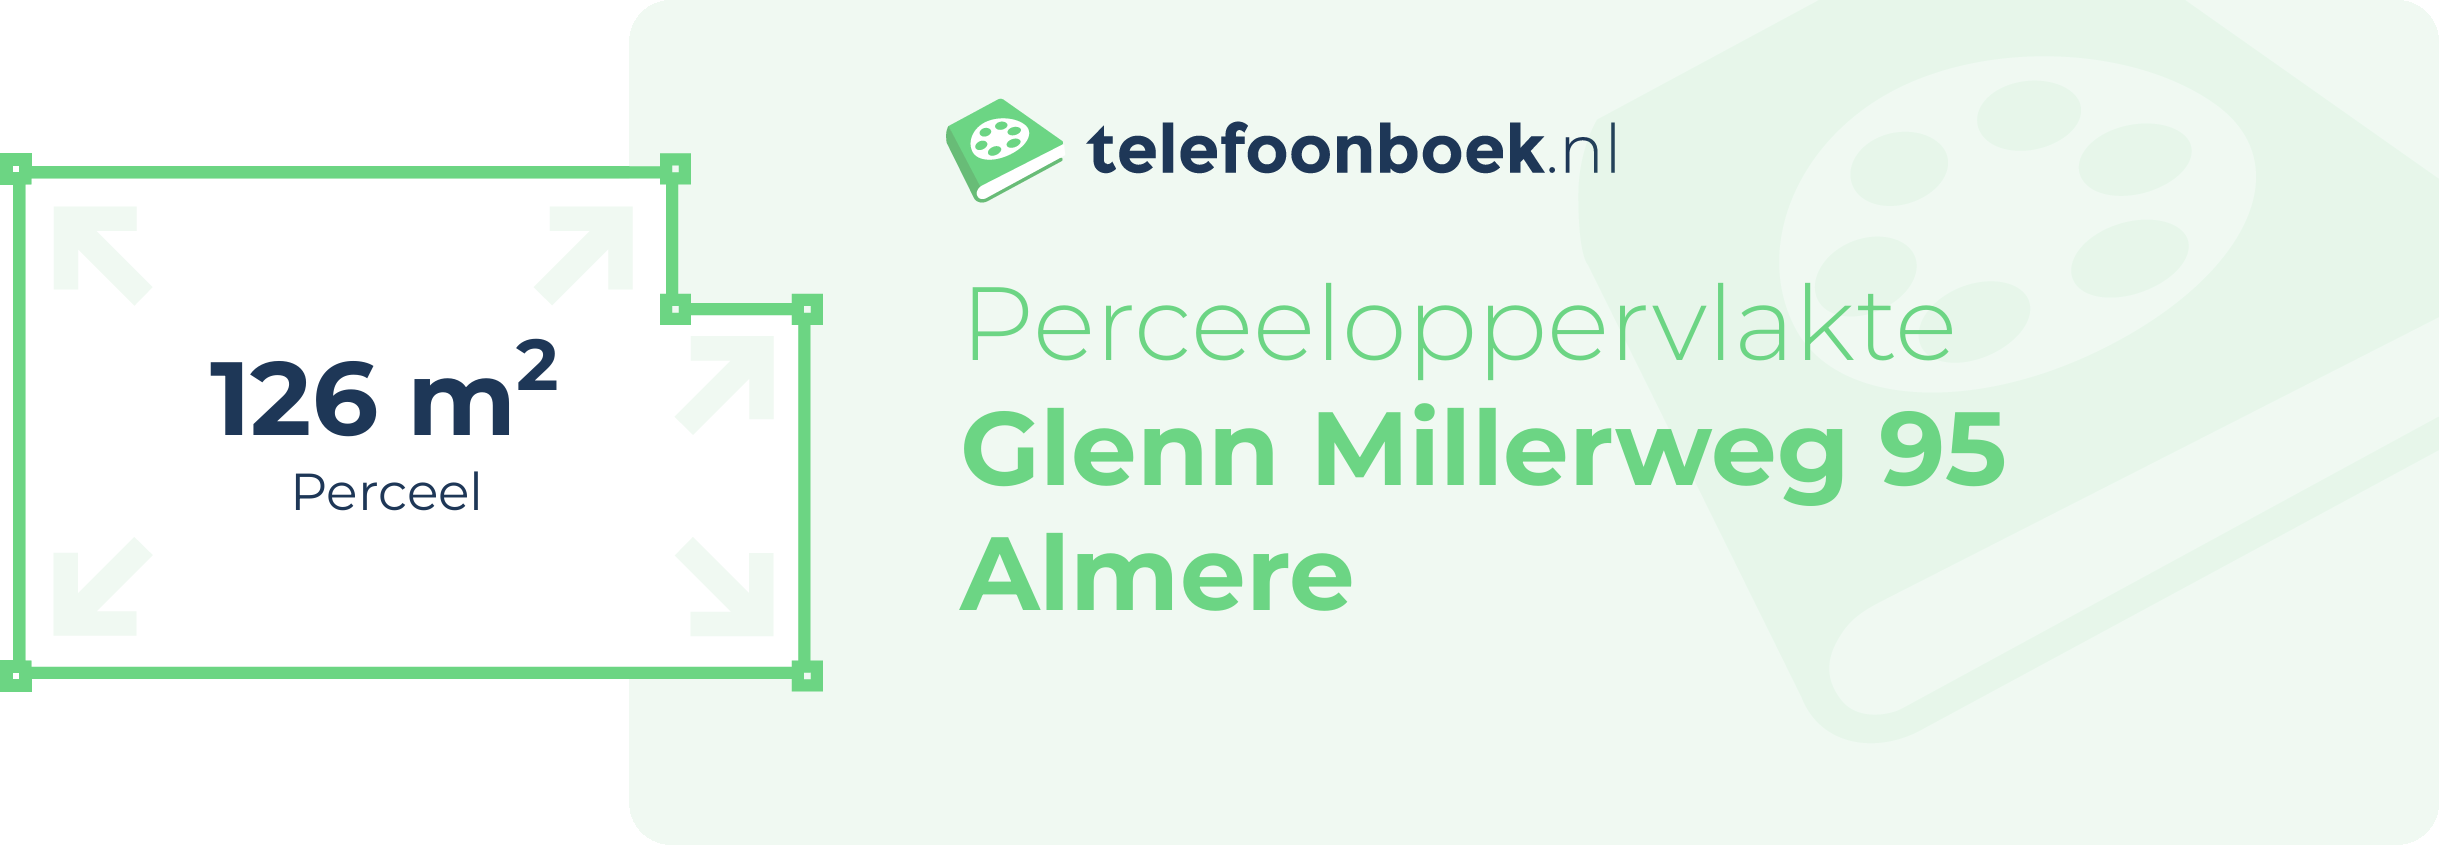 Perceeloppervlakte Glenn Millerweg 95 Almere